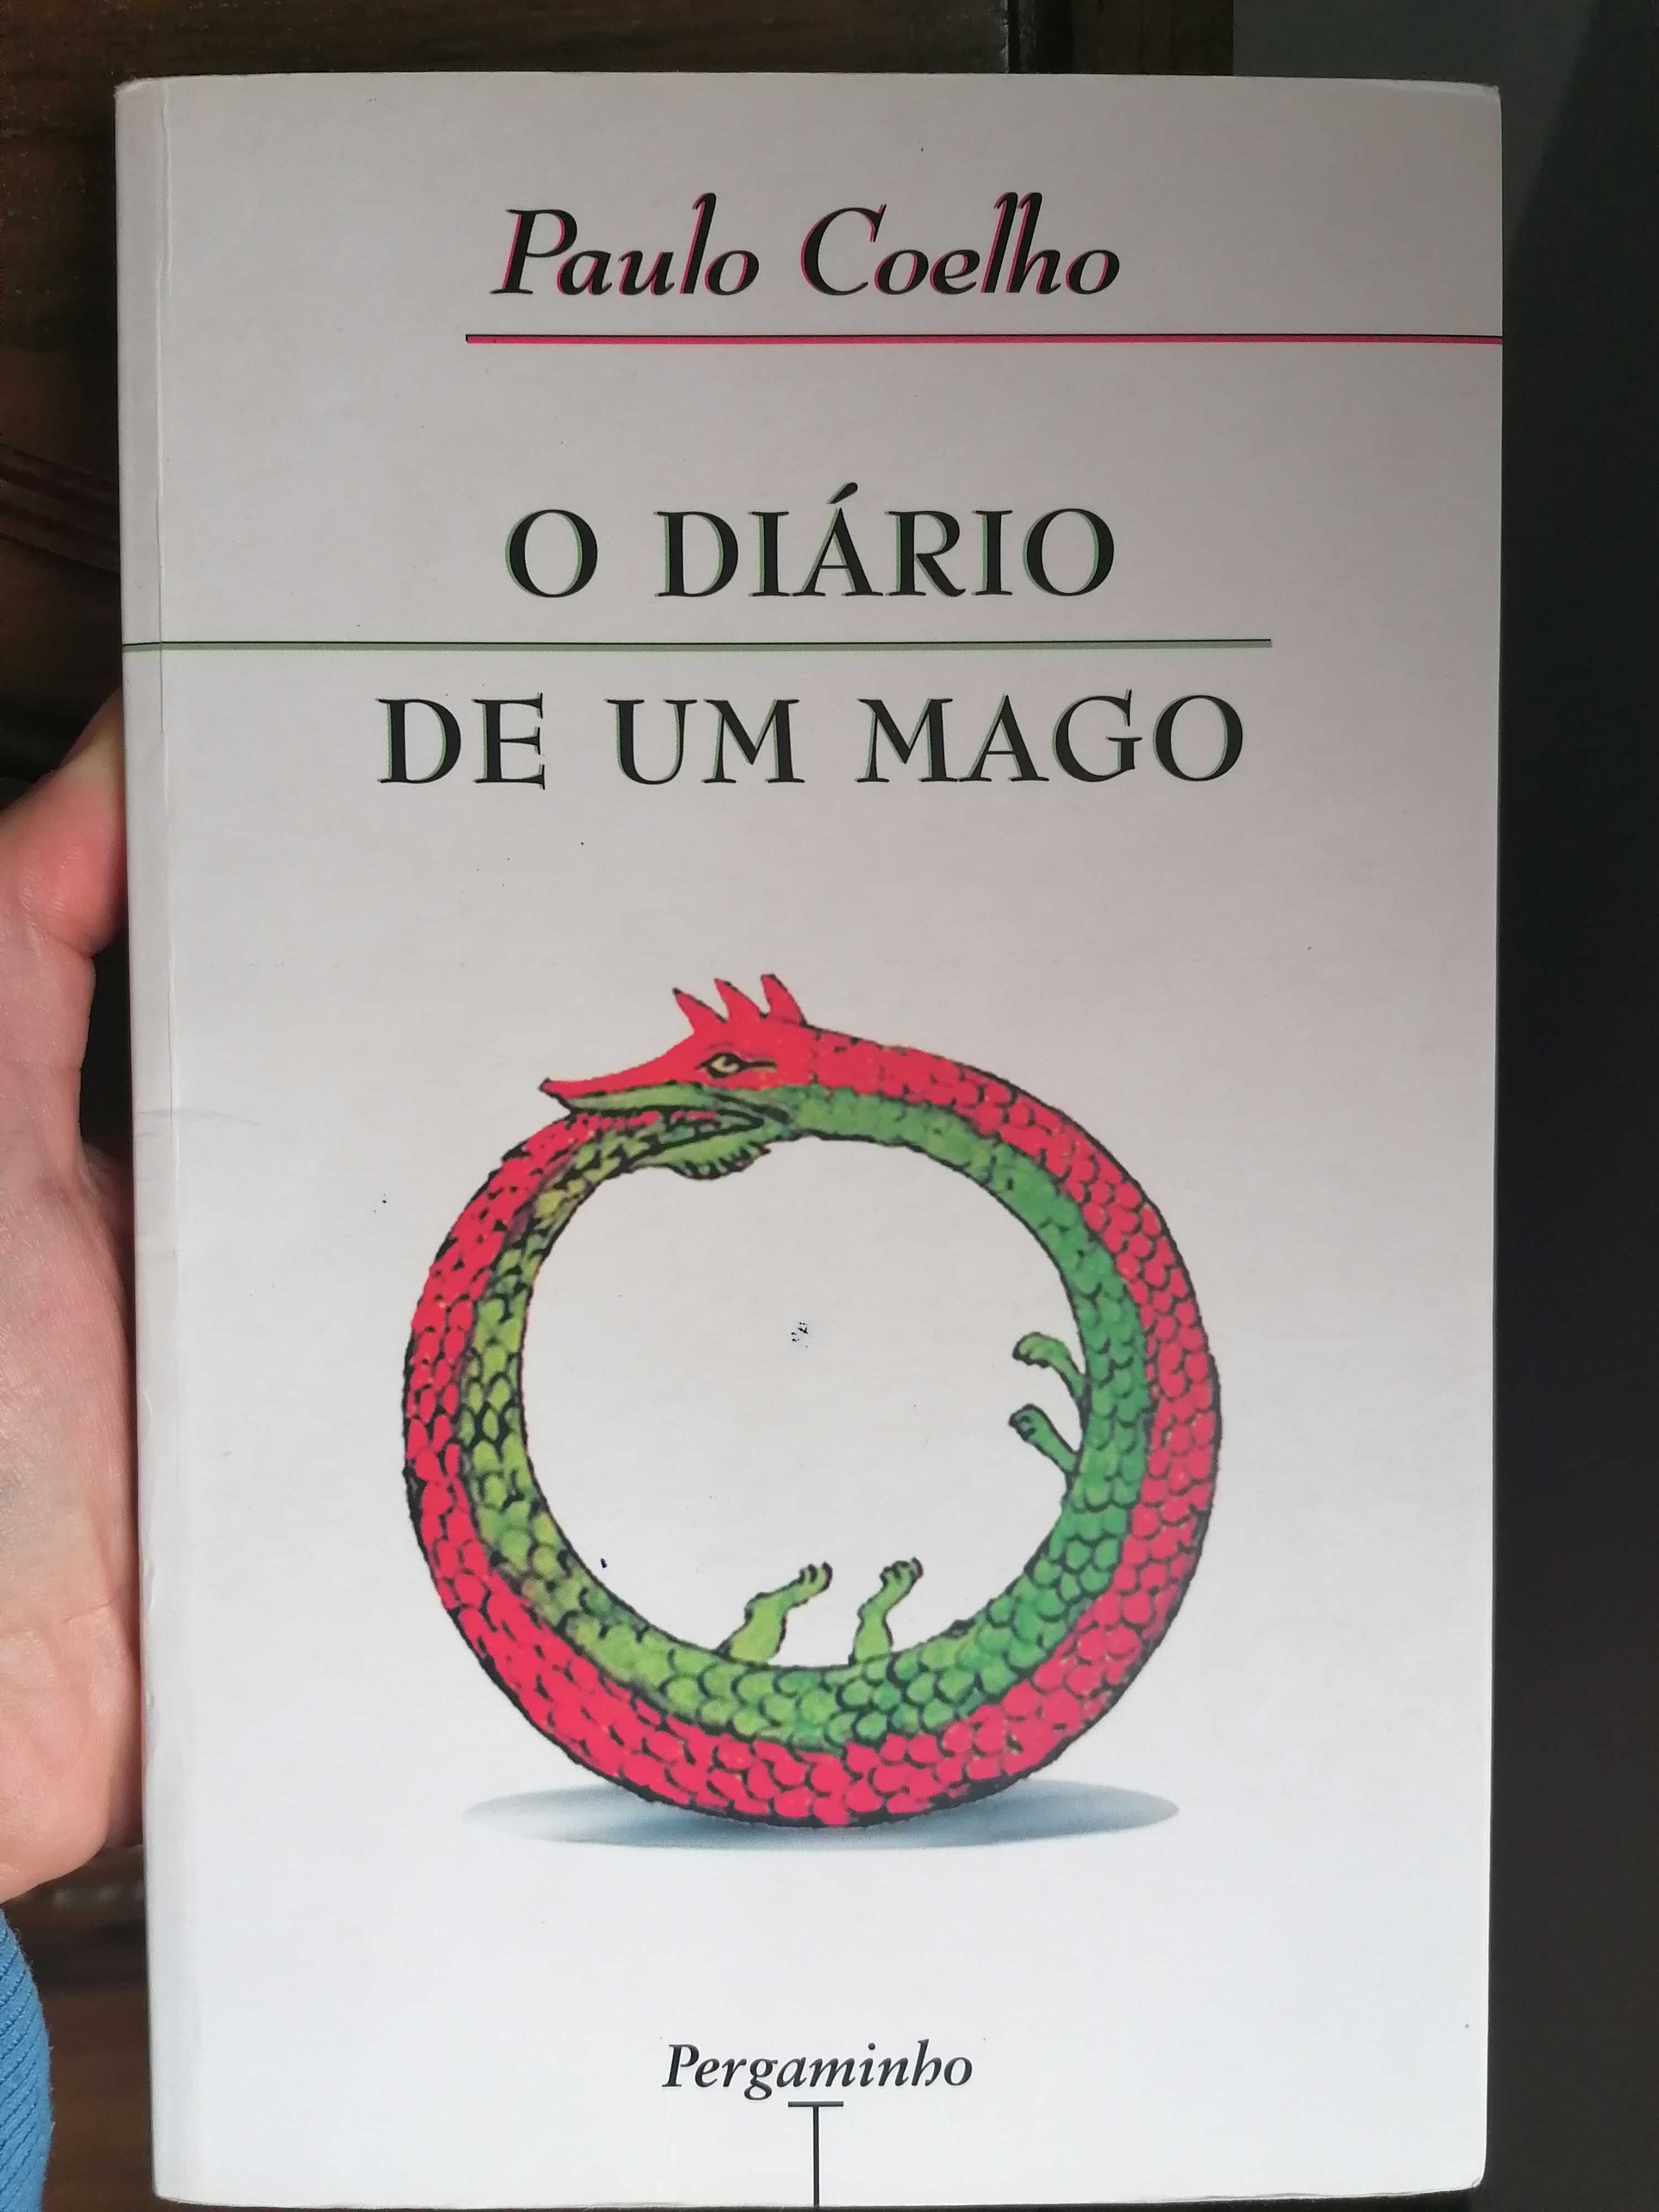 Livro "O diário de um mago" Paulo Coelho